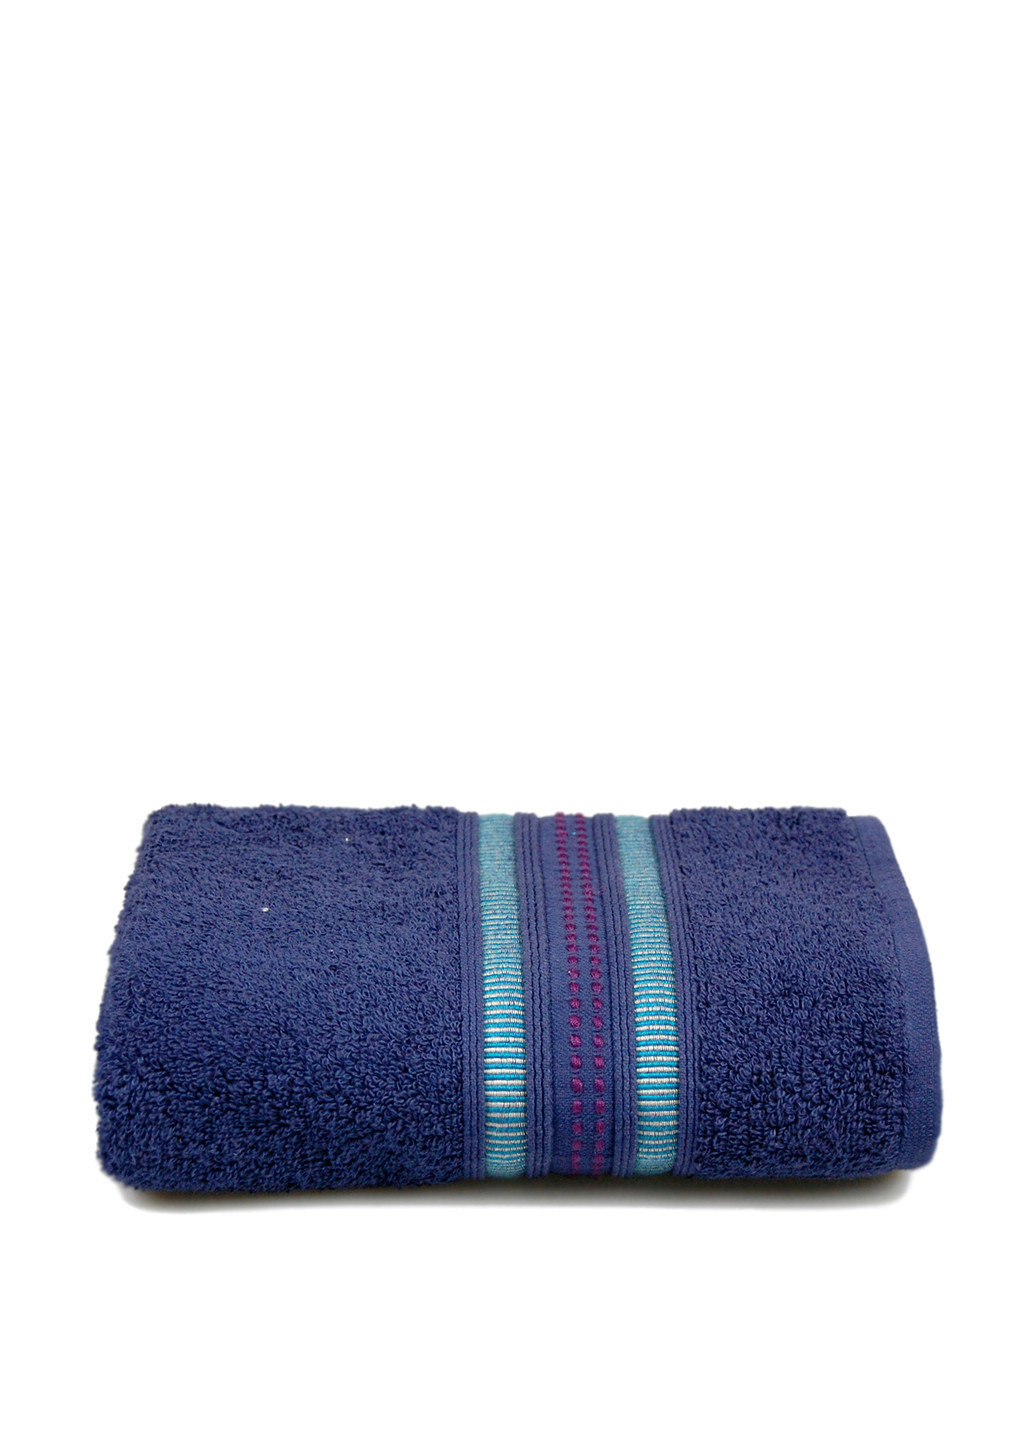 Home Line полотенце, 50х90 см однотонный синий производство - Турция